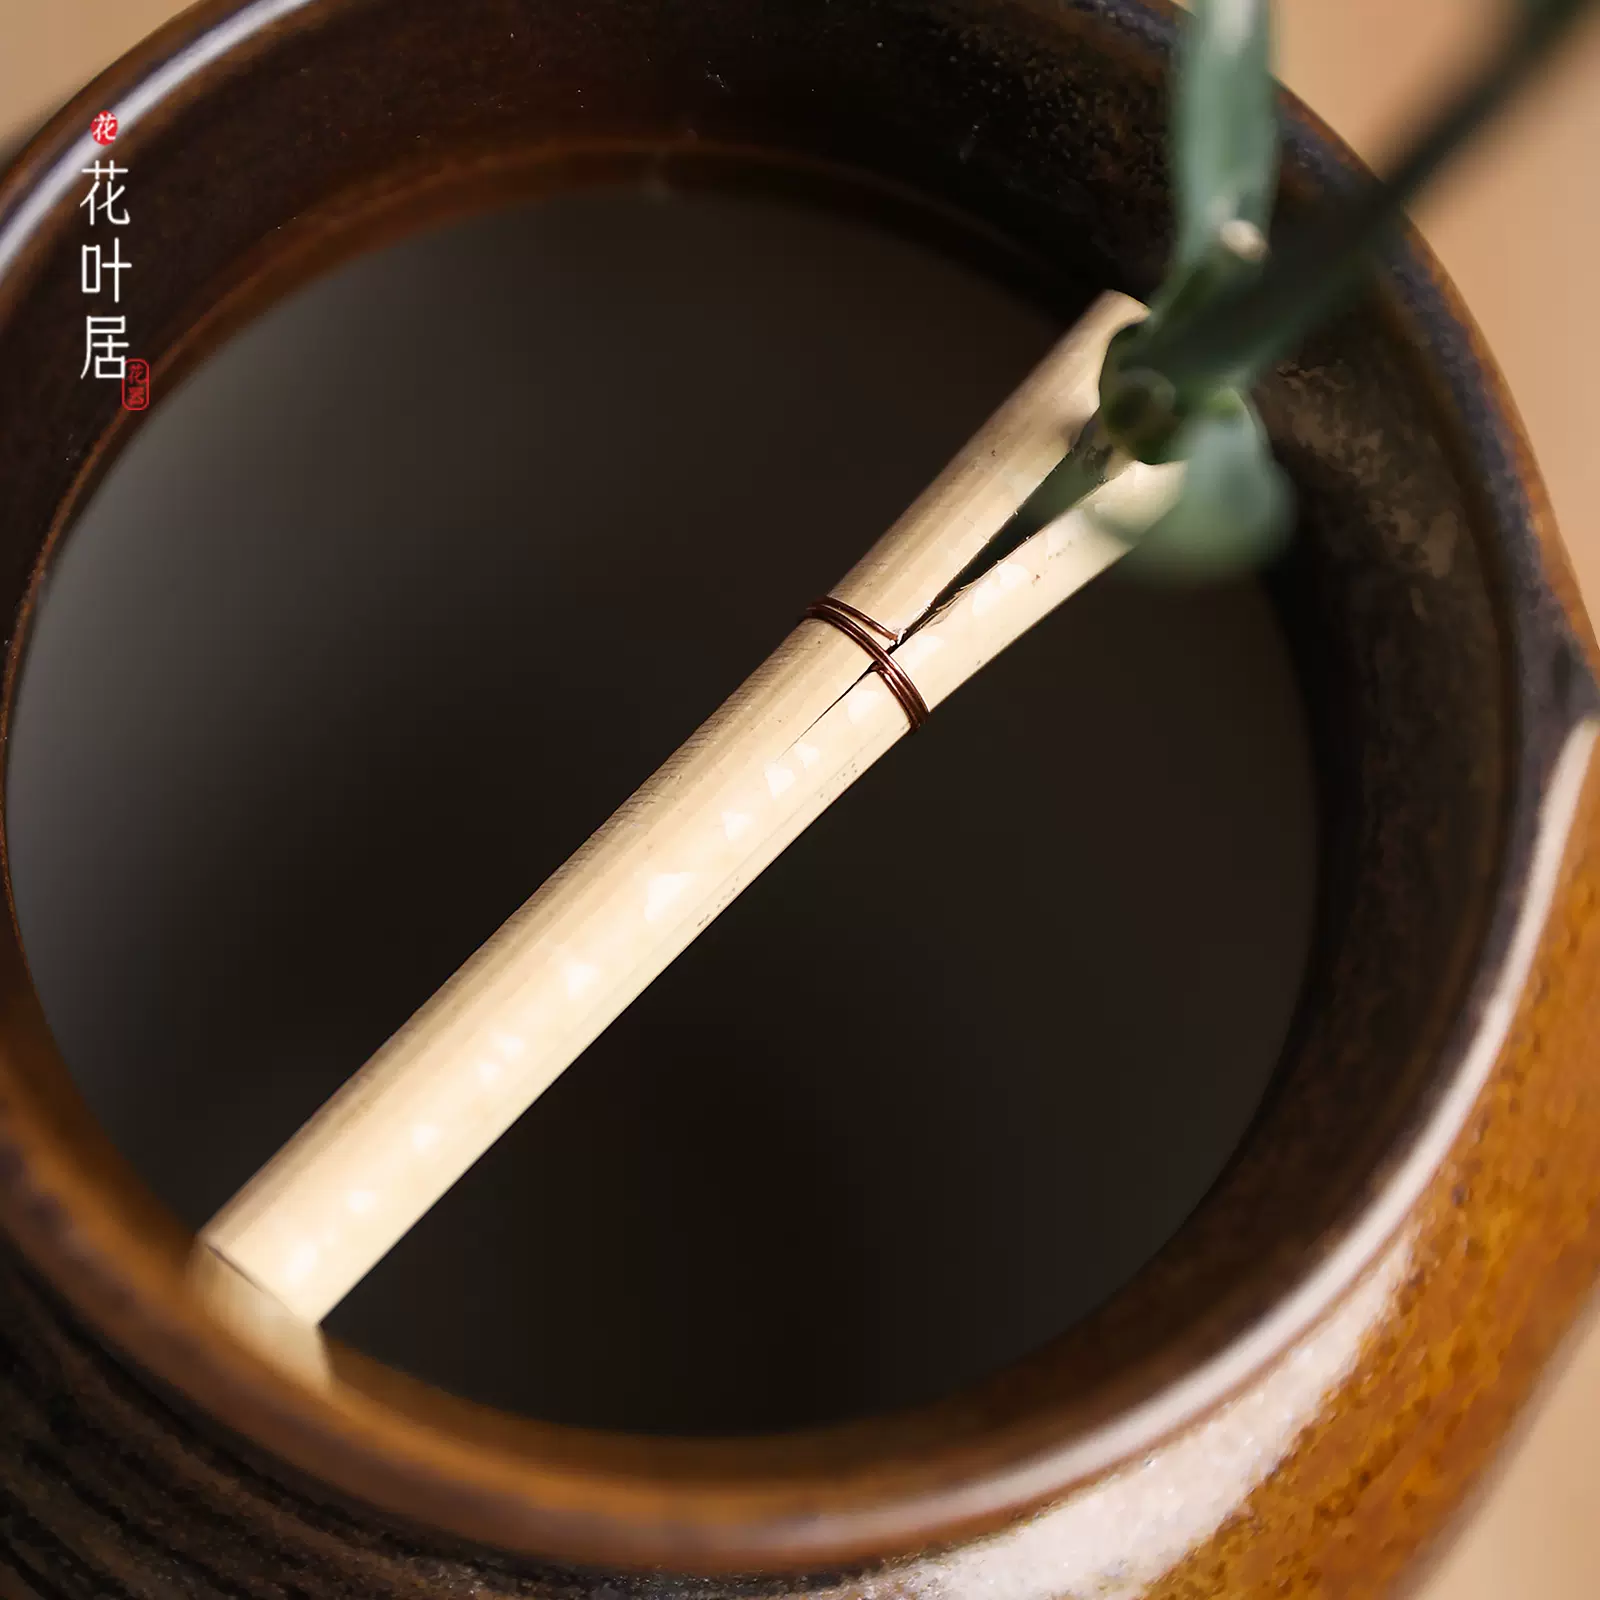 日本进口插花器花瓶竹木撒插花固定器日式小原流花艺花道工具-Taobao